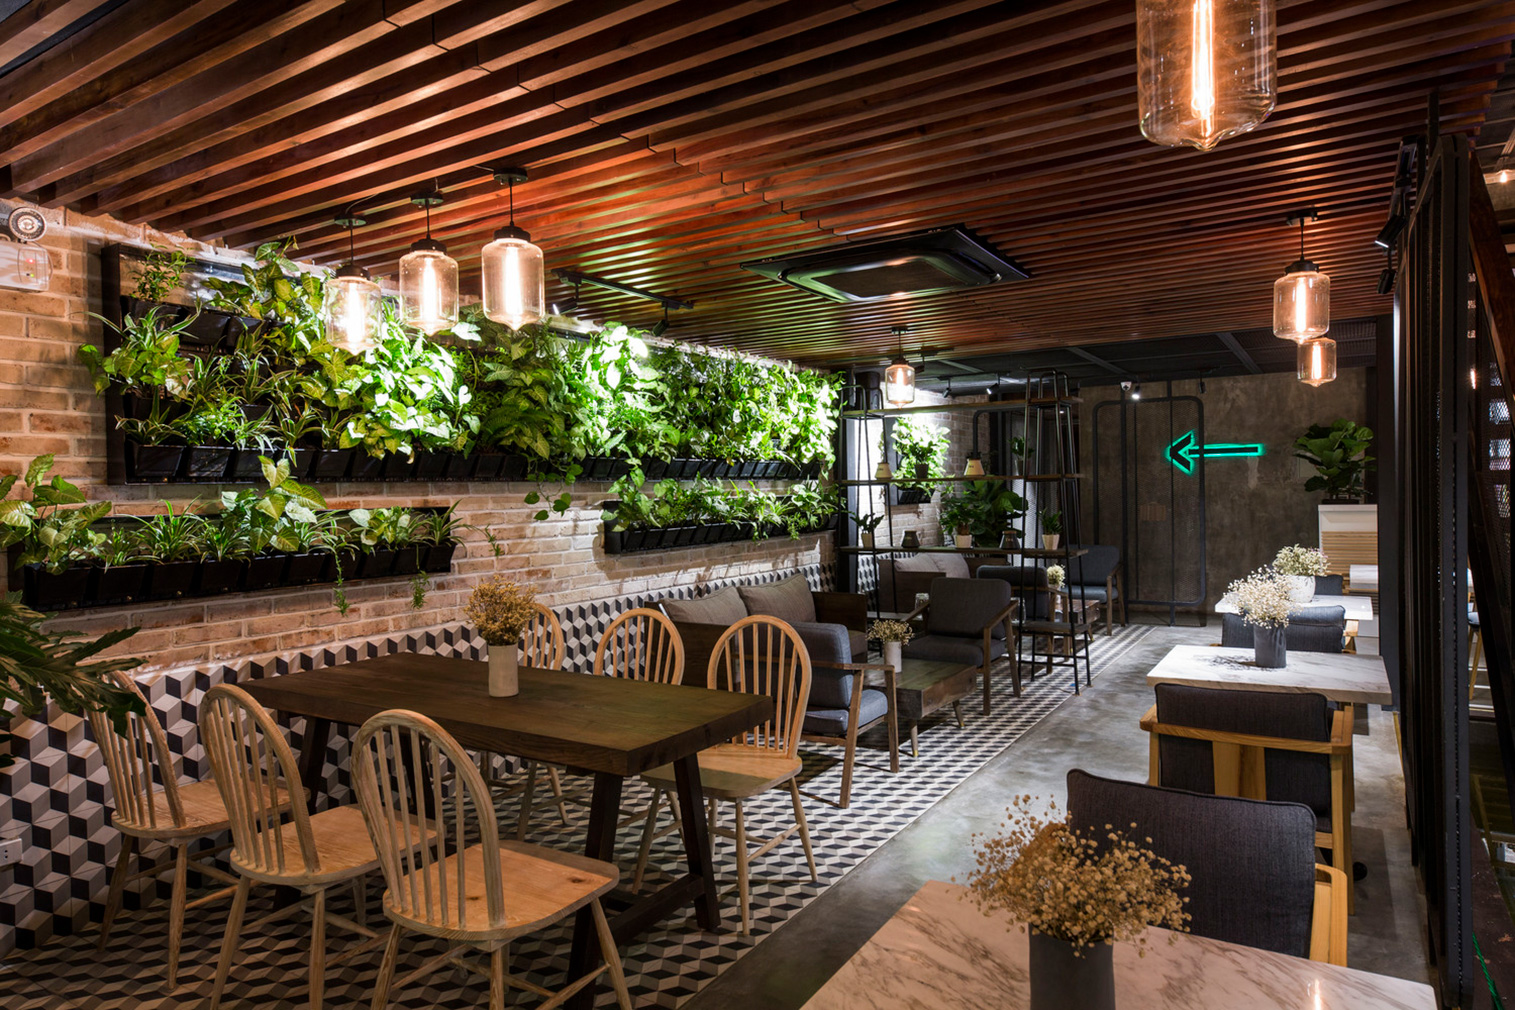 Le House designs a ‘secret garden’ cafe in Hanoi